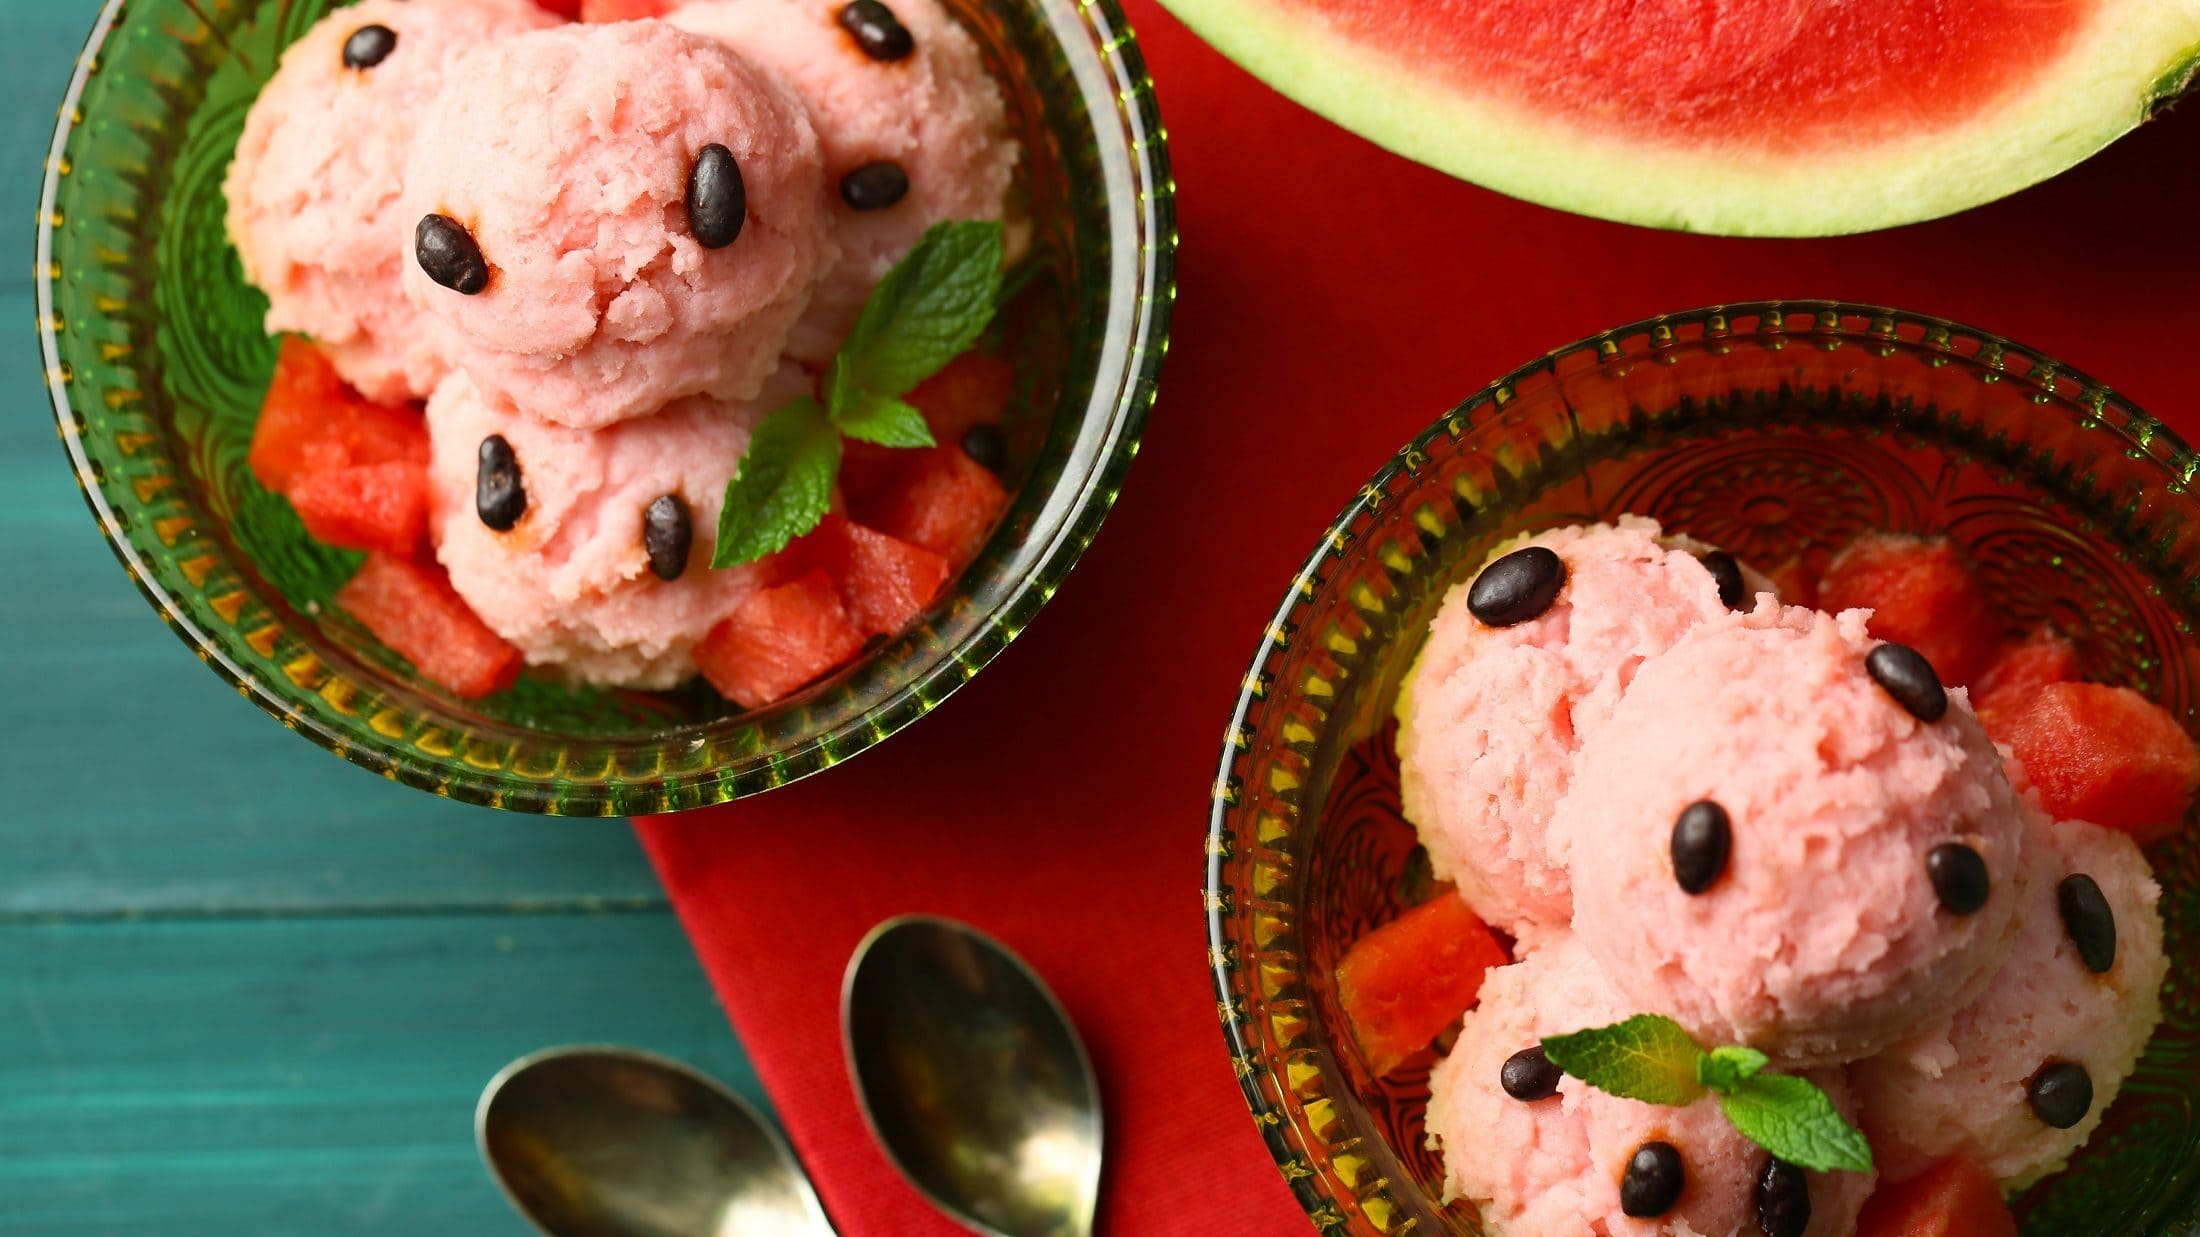 Draufsicht: Zwei Portionen selbst gemachtes Wassermelonen-Eis, eine angeschnittene Melone und zwei kleine Löffel.